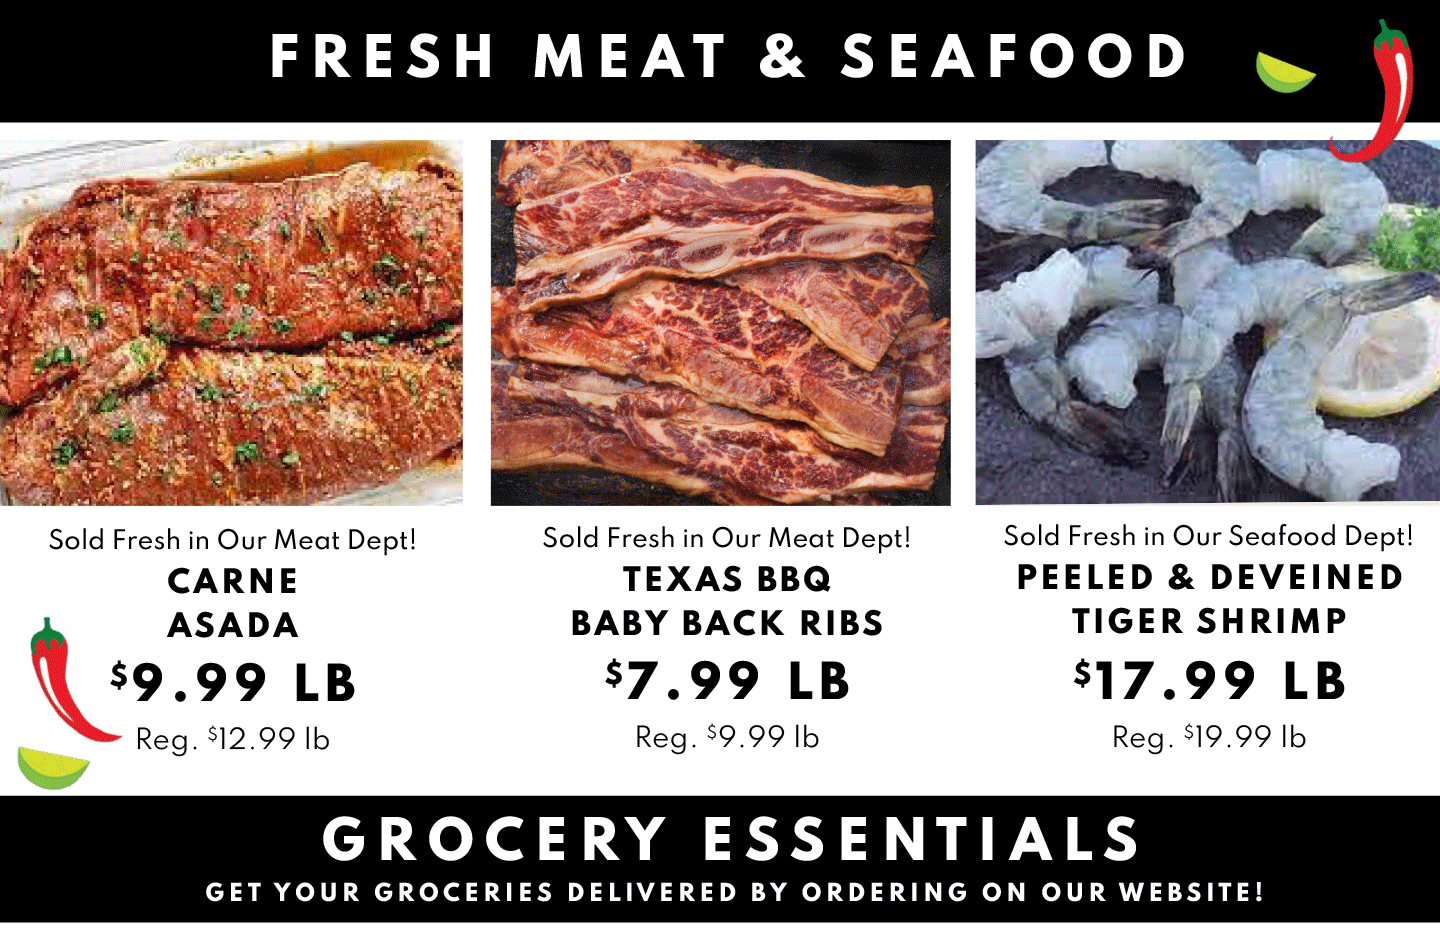 Carne Asada $9.99 lb, Texas BBQ Baby Back Ribs $7.99 lb and PEeled & Deveined Tigr Shrimp $17.99 lb